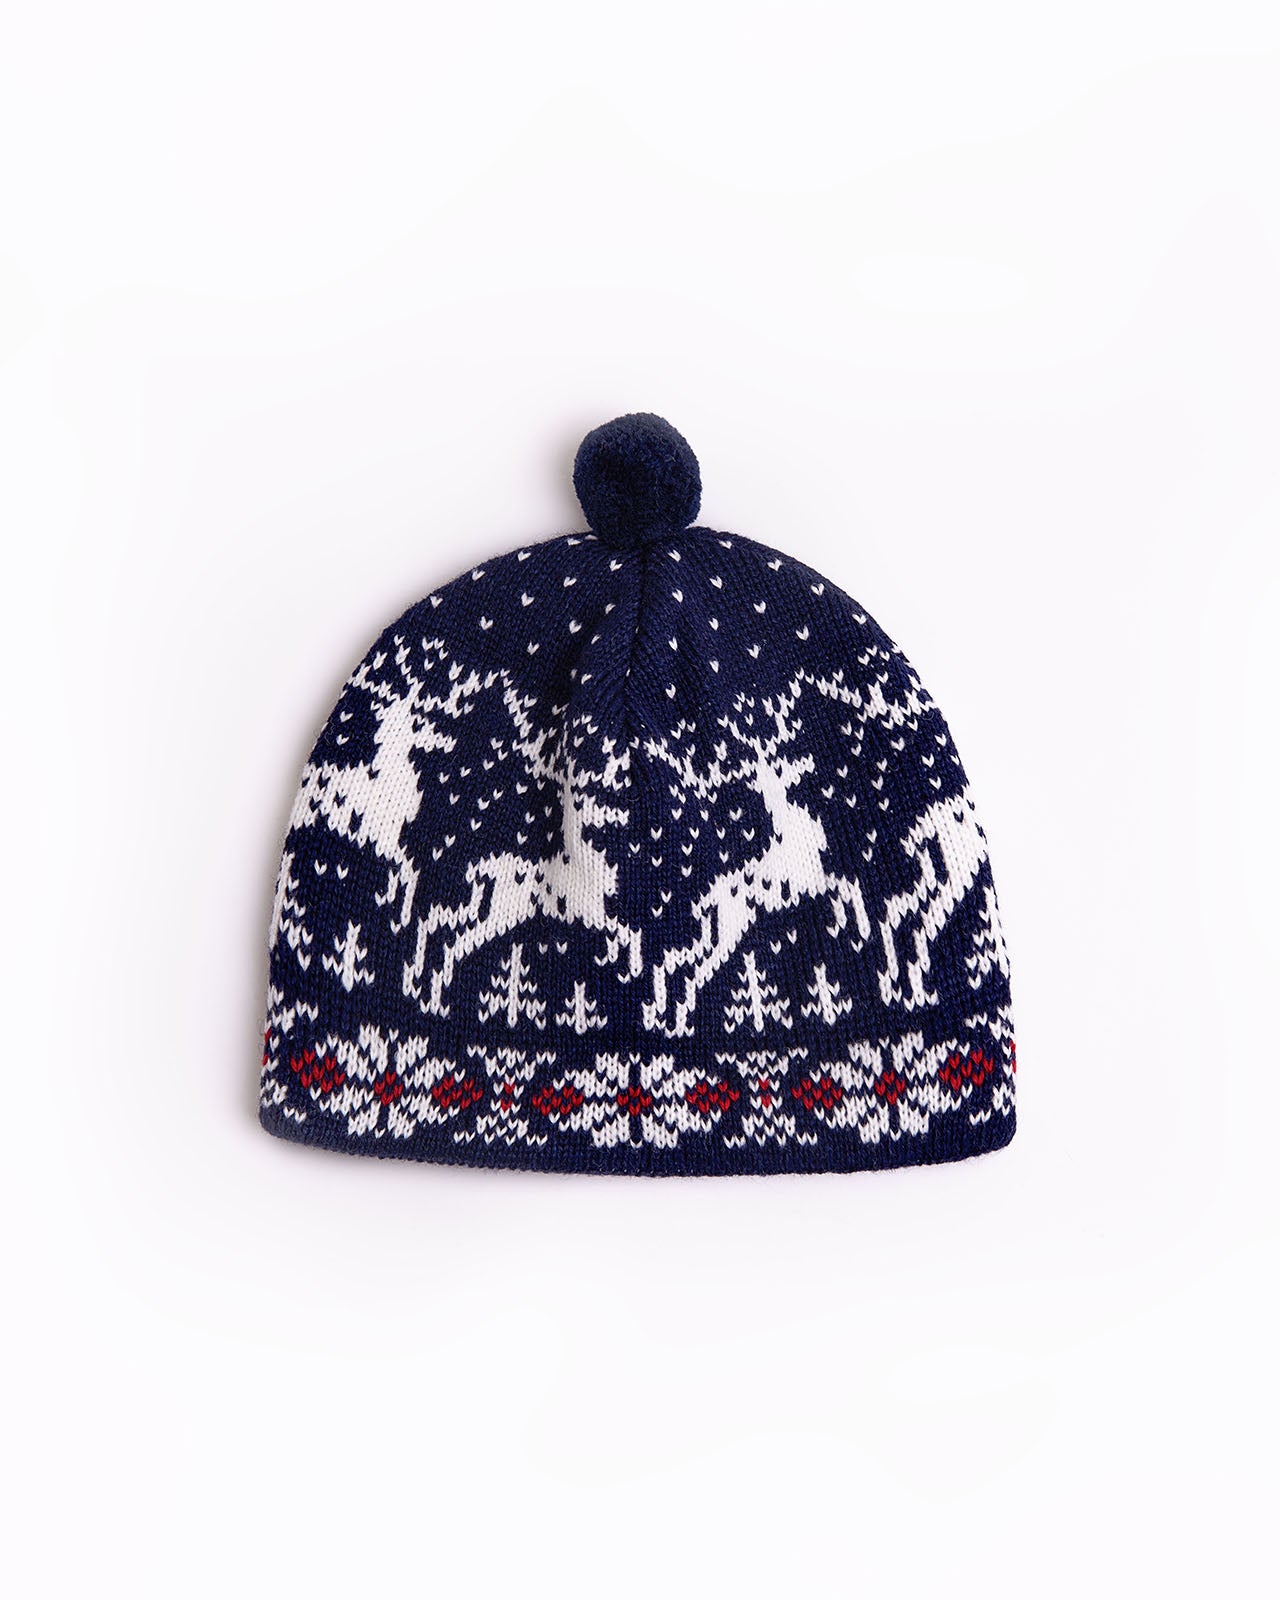 Christmas wool hat with reindeers